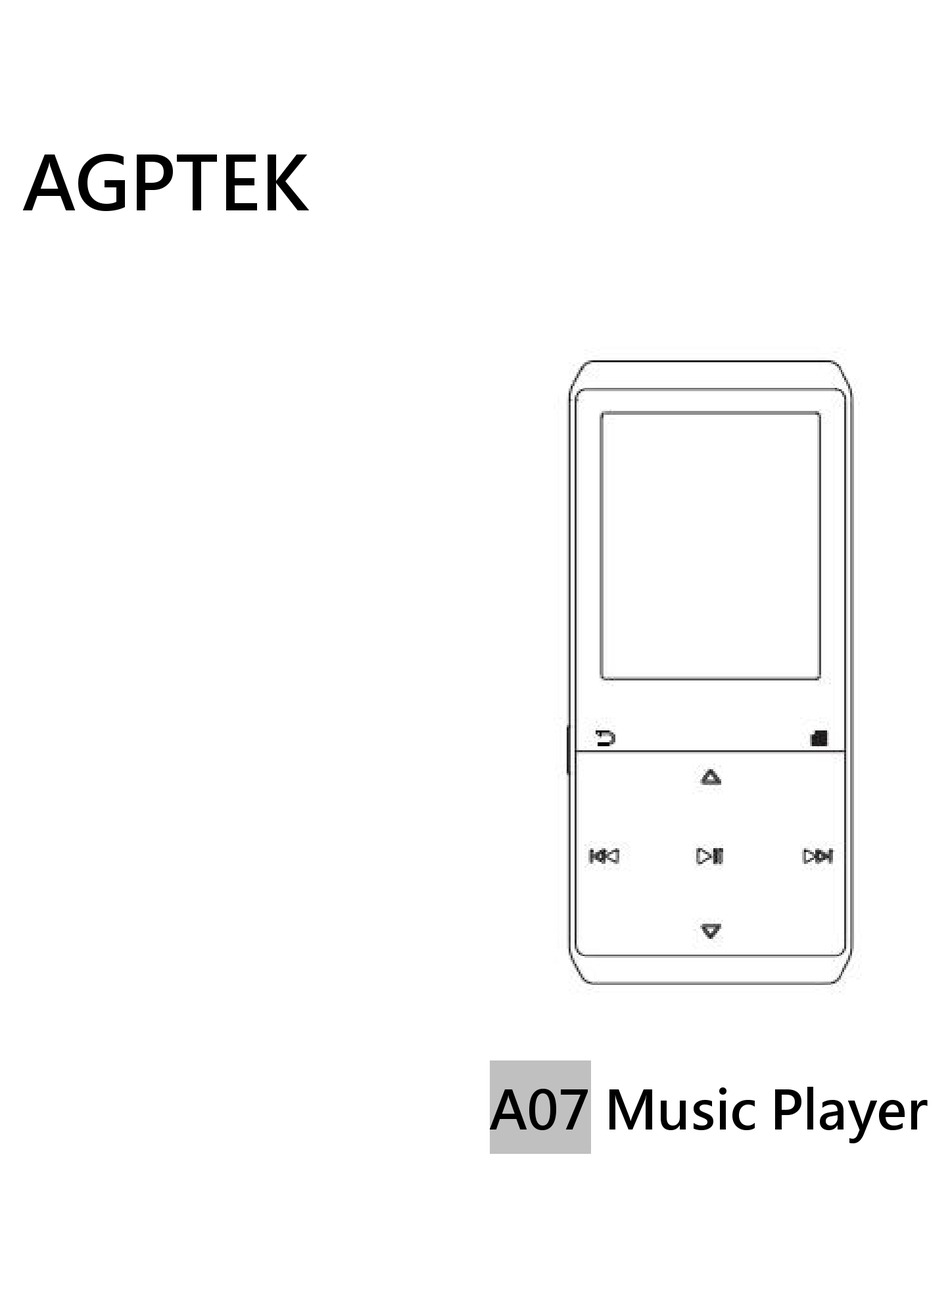 agptek music player a20s